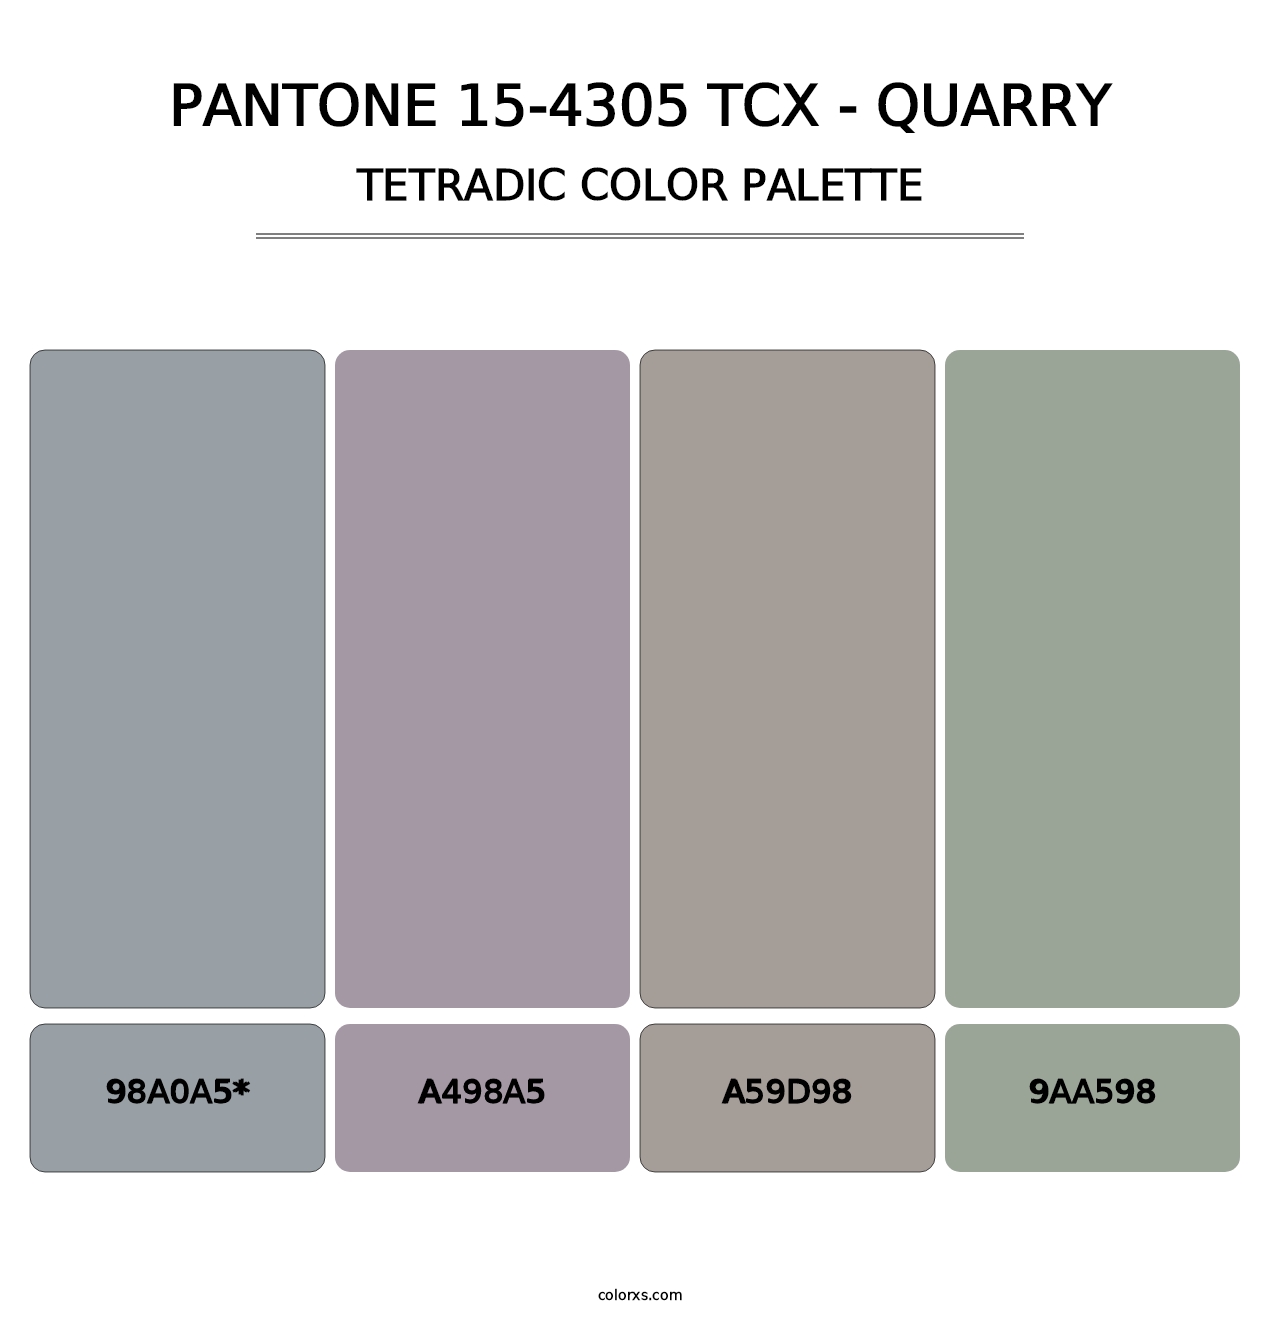 PANTONE 15-4305 TCX - Quarry - Tetradic Color Palette